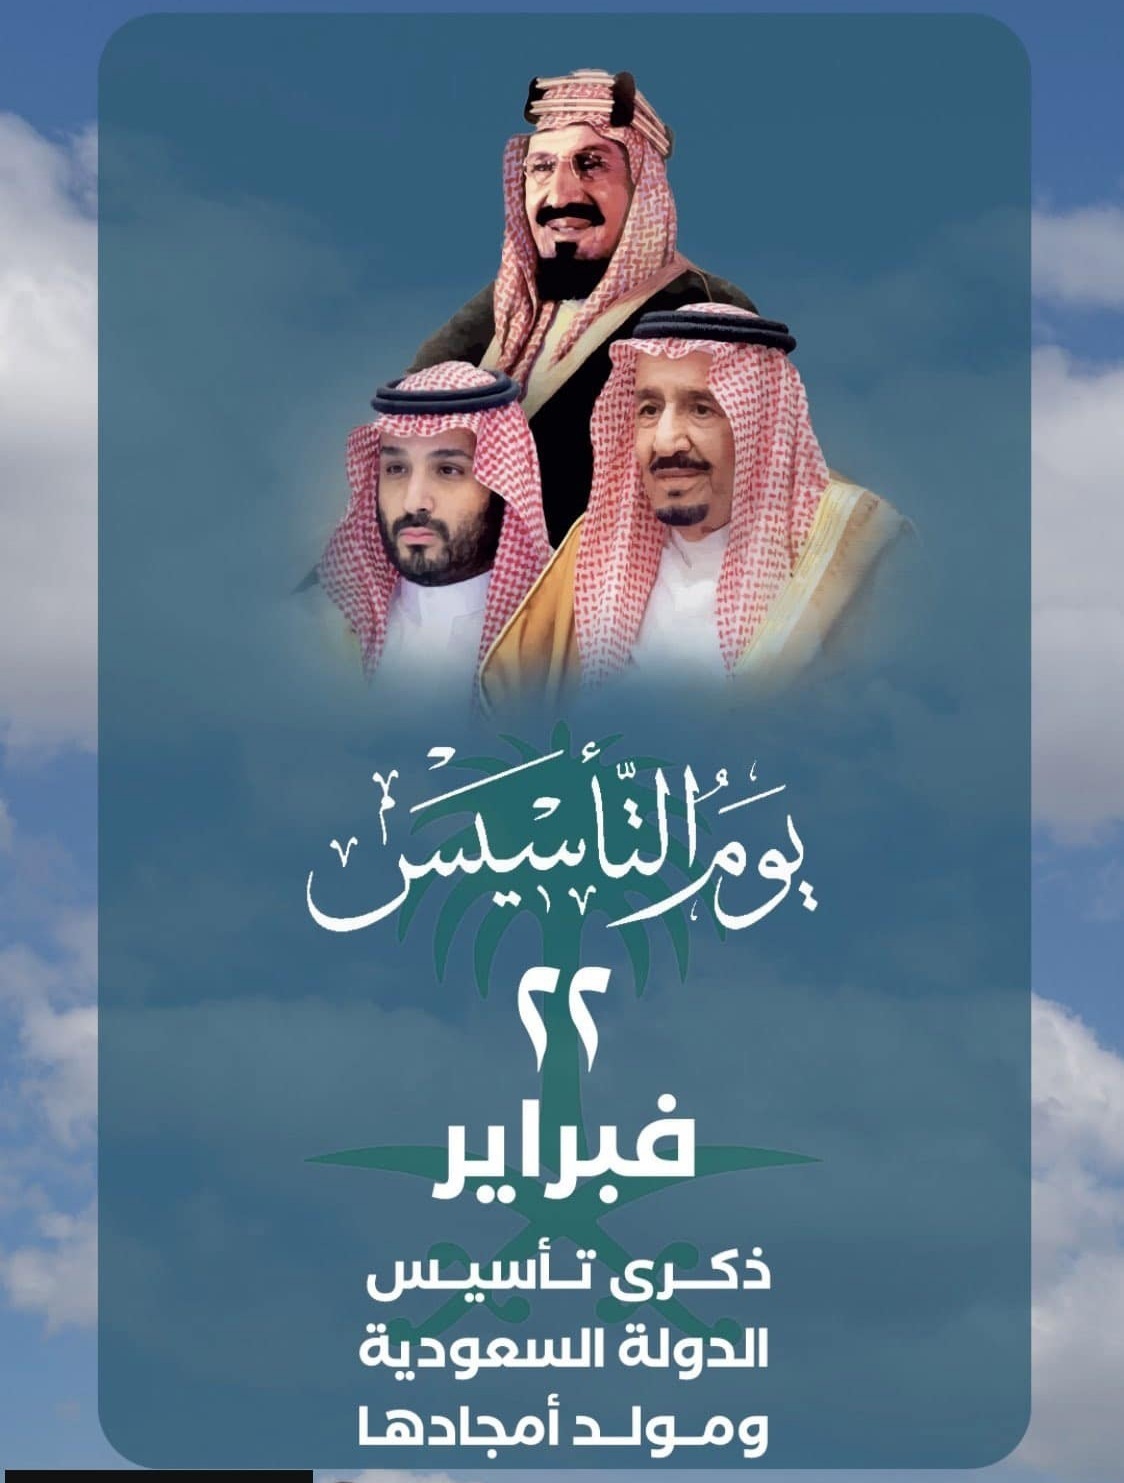 كلام عن يوم التأسيس السعودي تويتر